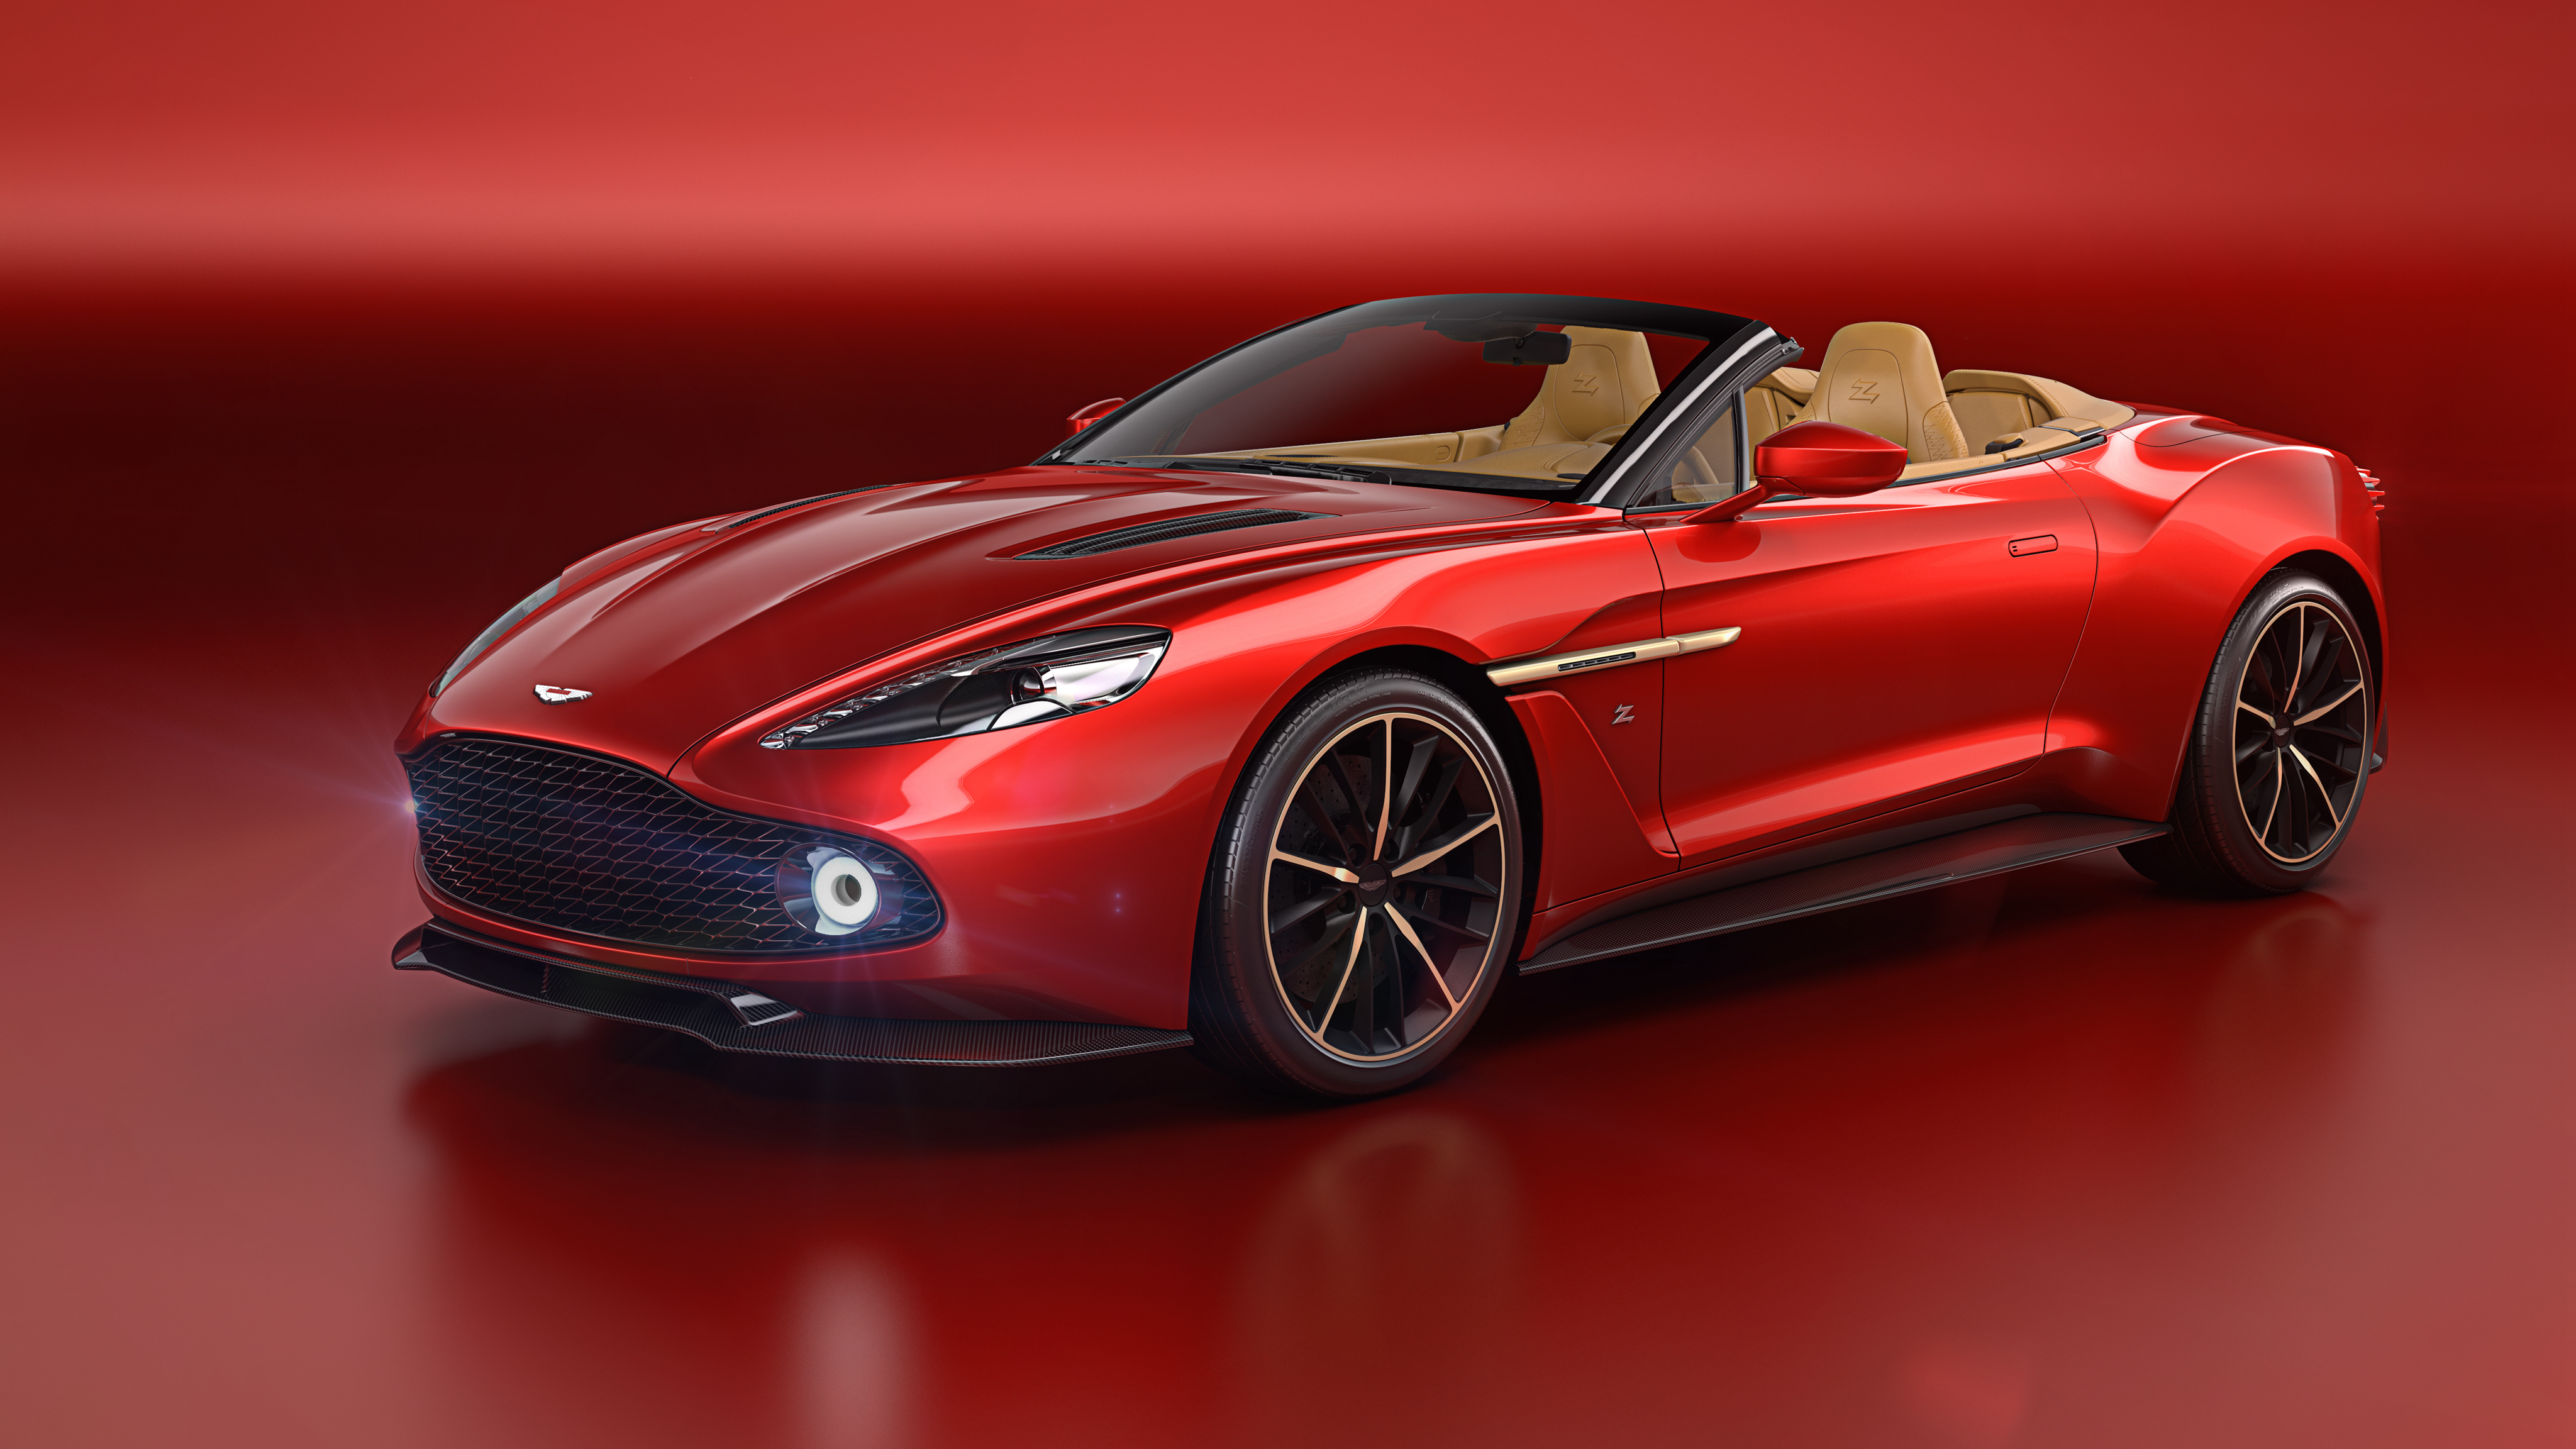 Descarga gratuita de fondo de pantalla para móvil de Aston Martin, Vehículos, Aston Martin Vanquish.